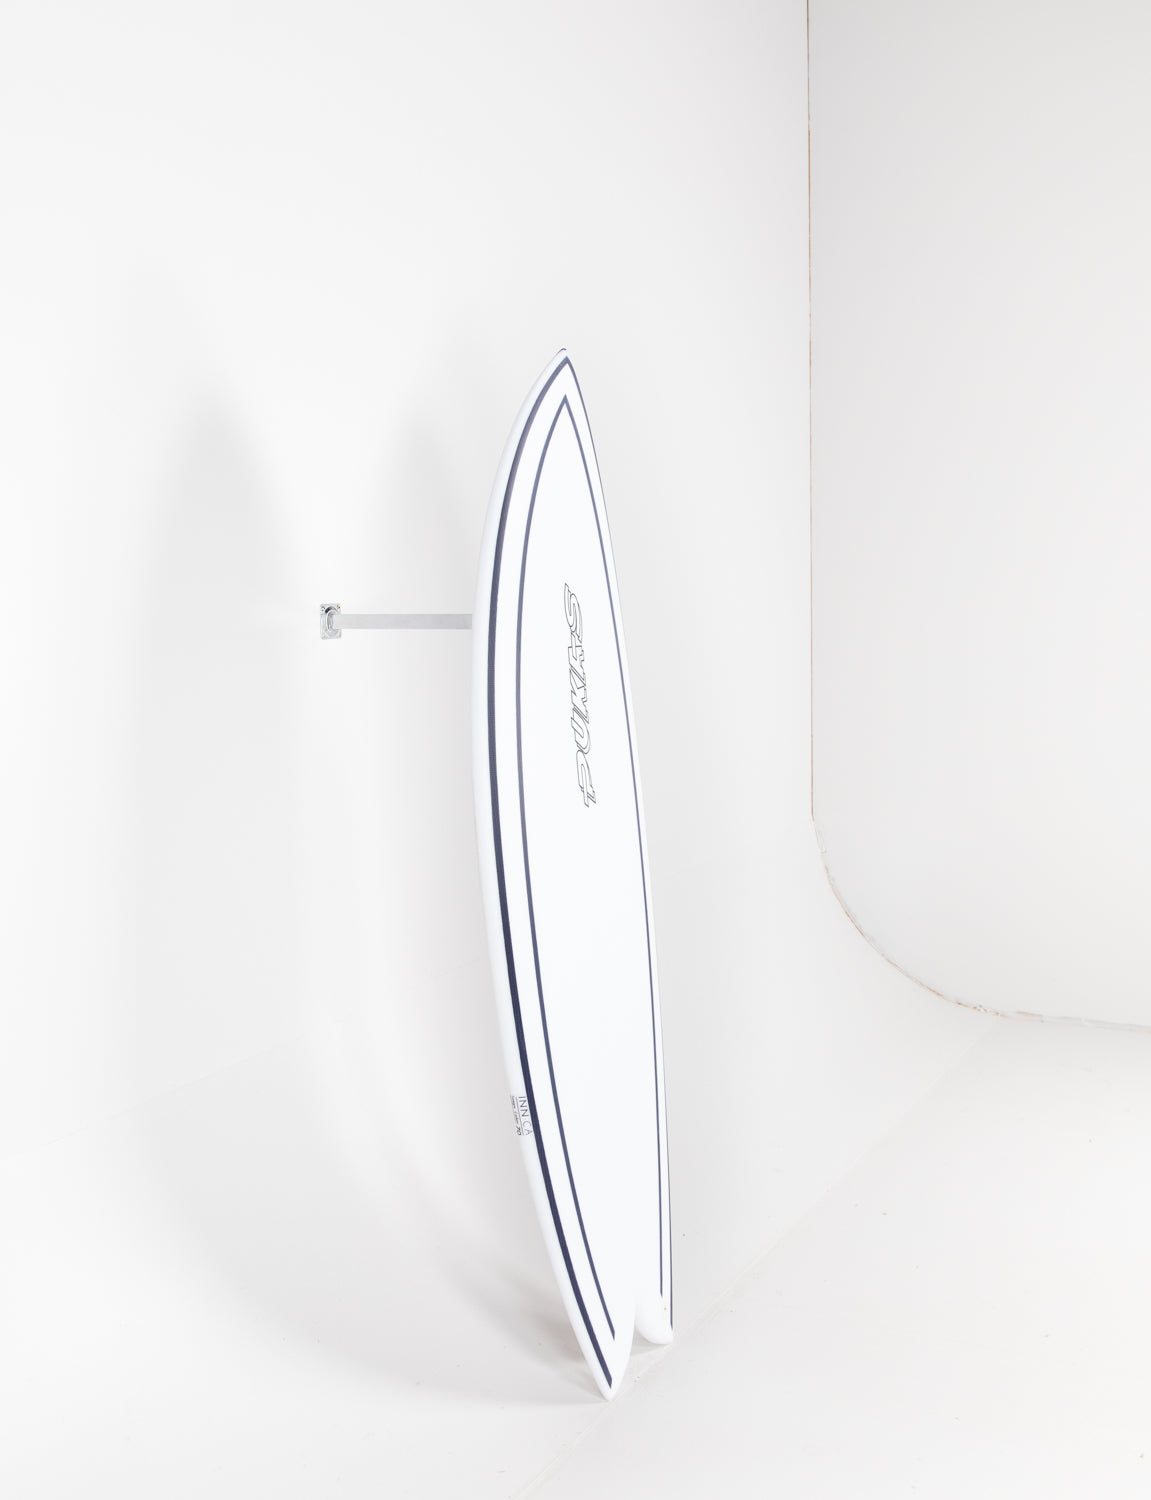 
                  
                    Pukas Surfboard - INNCA Tech - WOMBI FISH by Eye Symmetry - 5’06” x 20 3/4 x 2 5/16 x 29.9L Ref:0002
                  
                